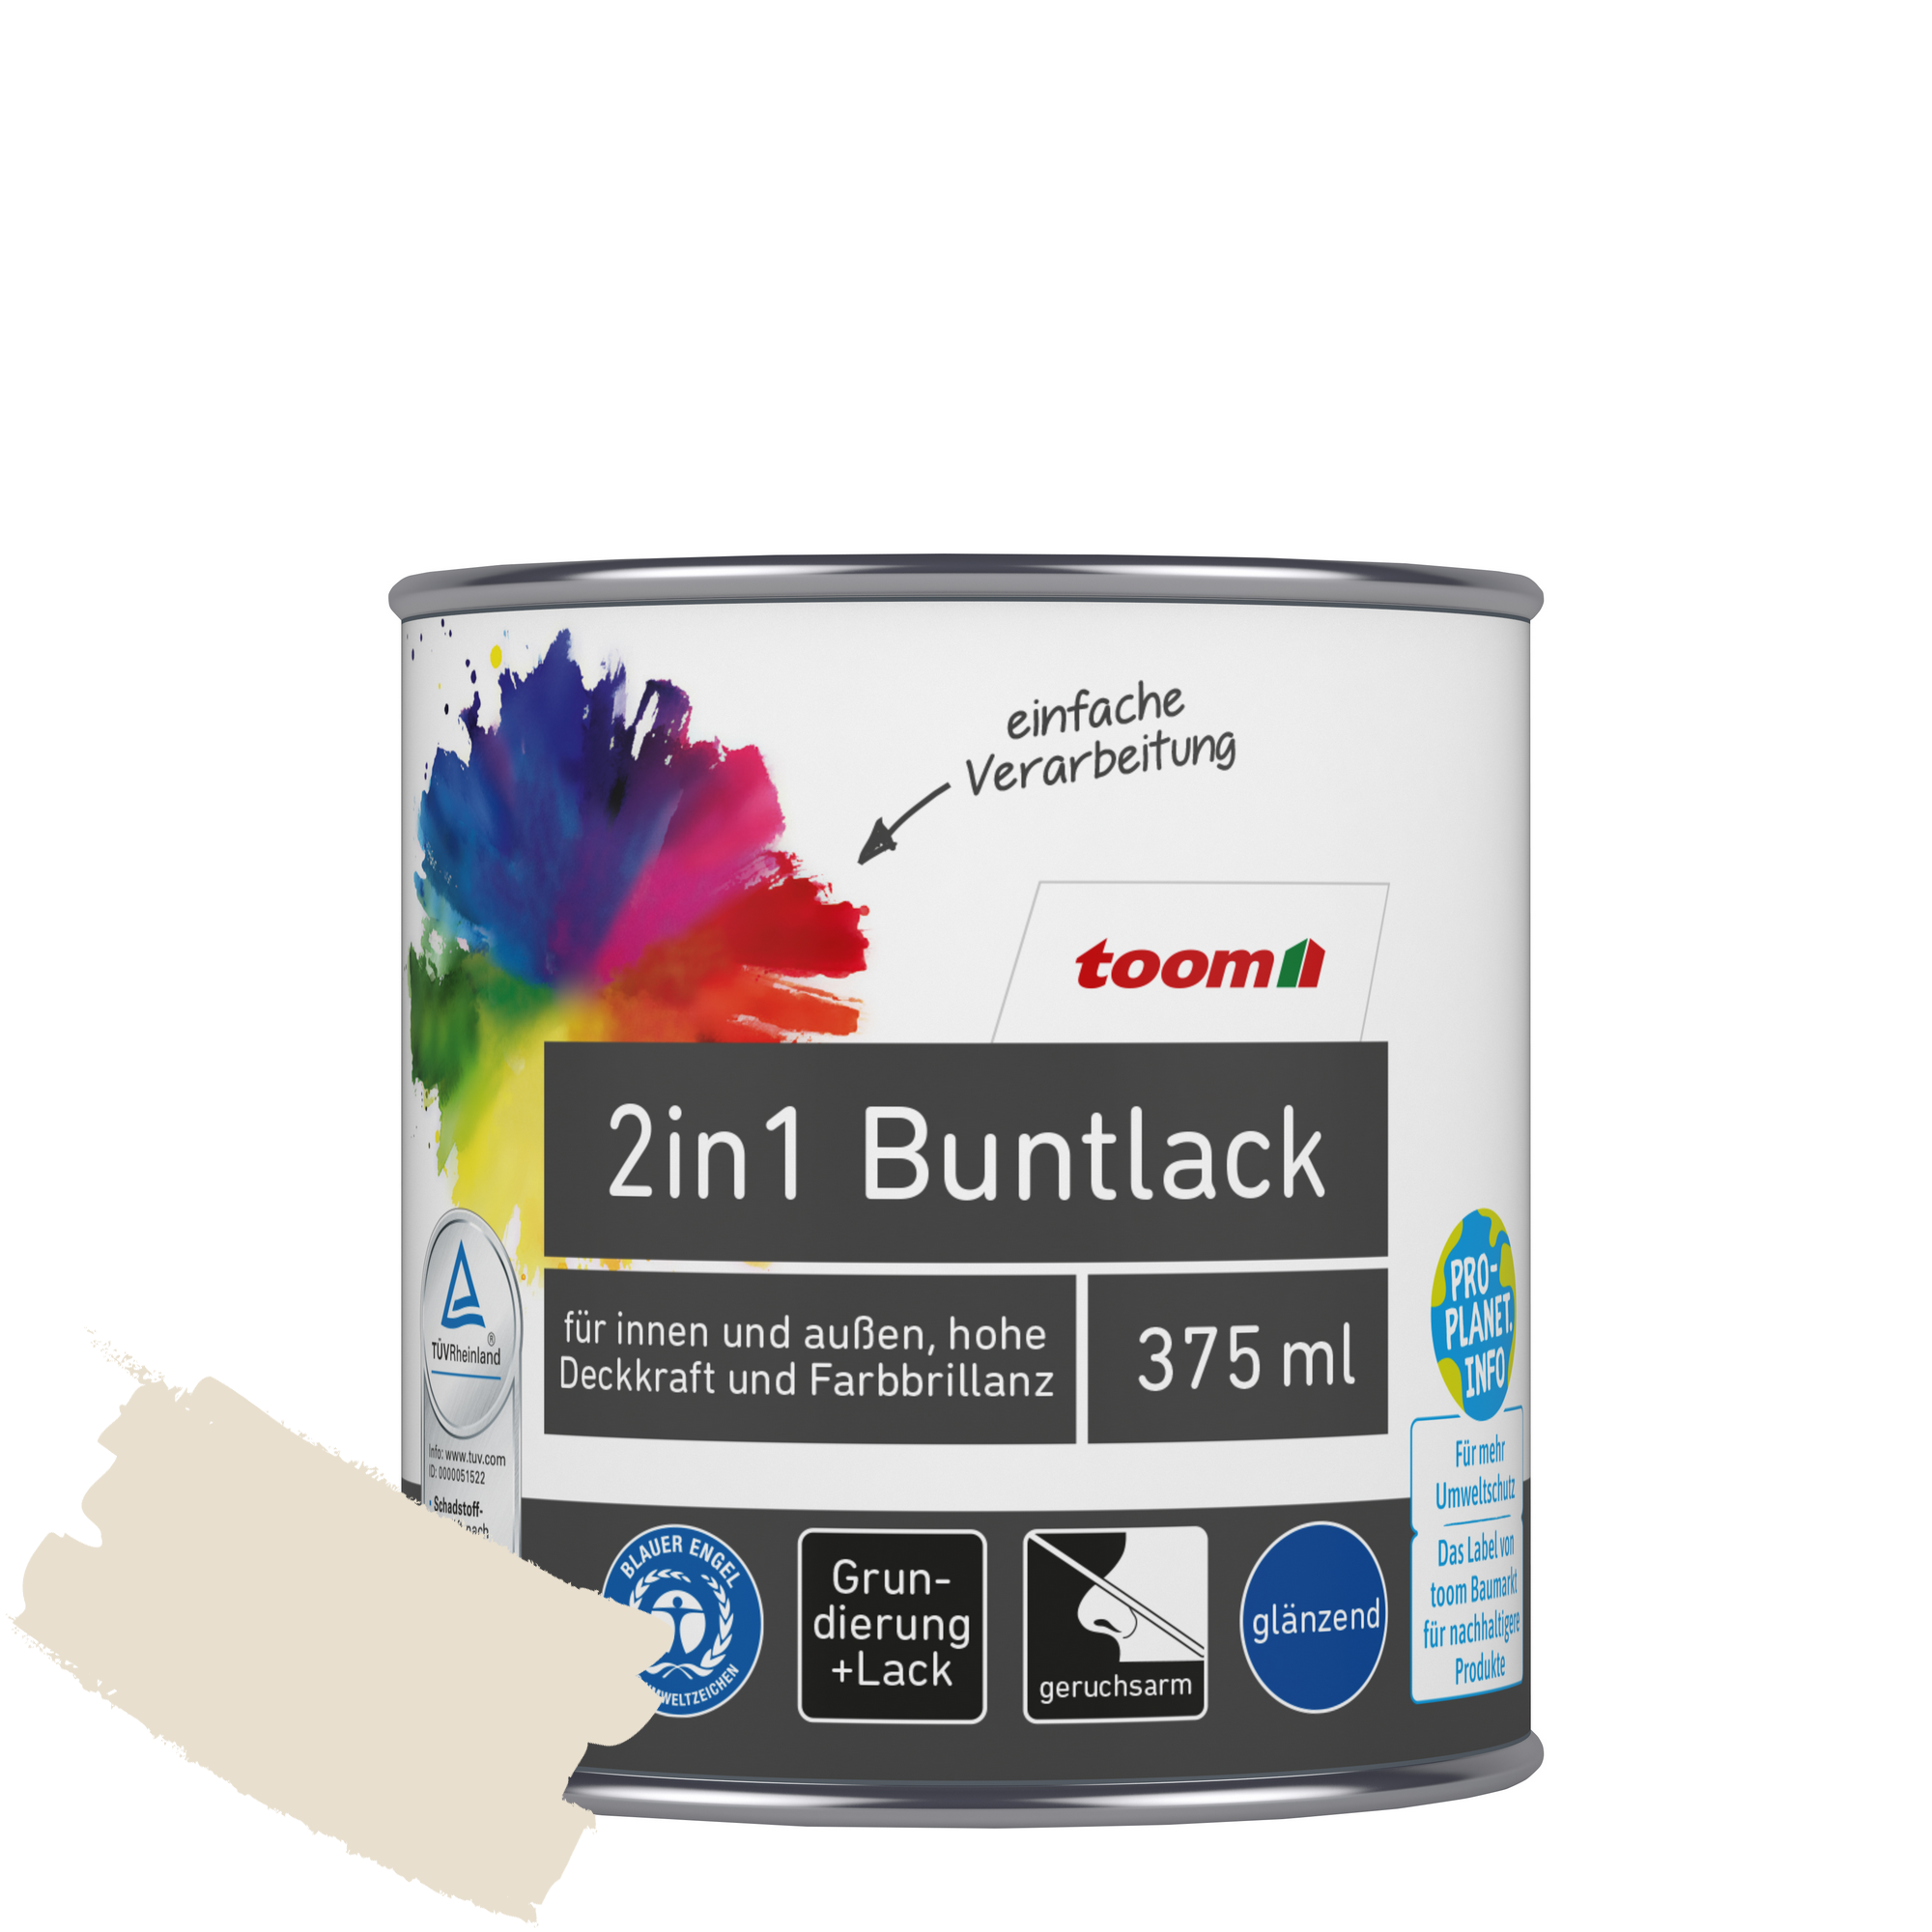 2in1 Buntlack 'Bergkristall' cremeweiß glänzend 375 ml + product picture